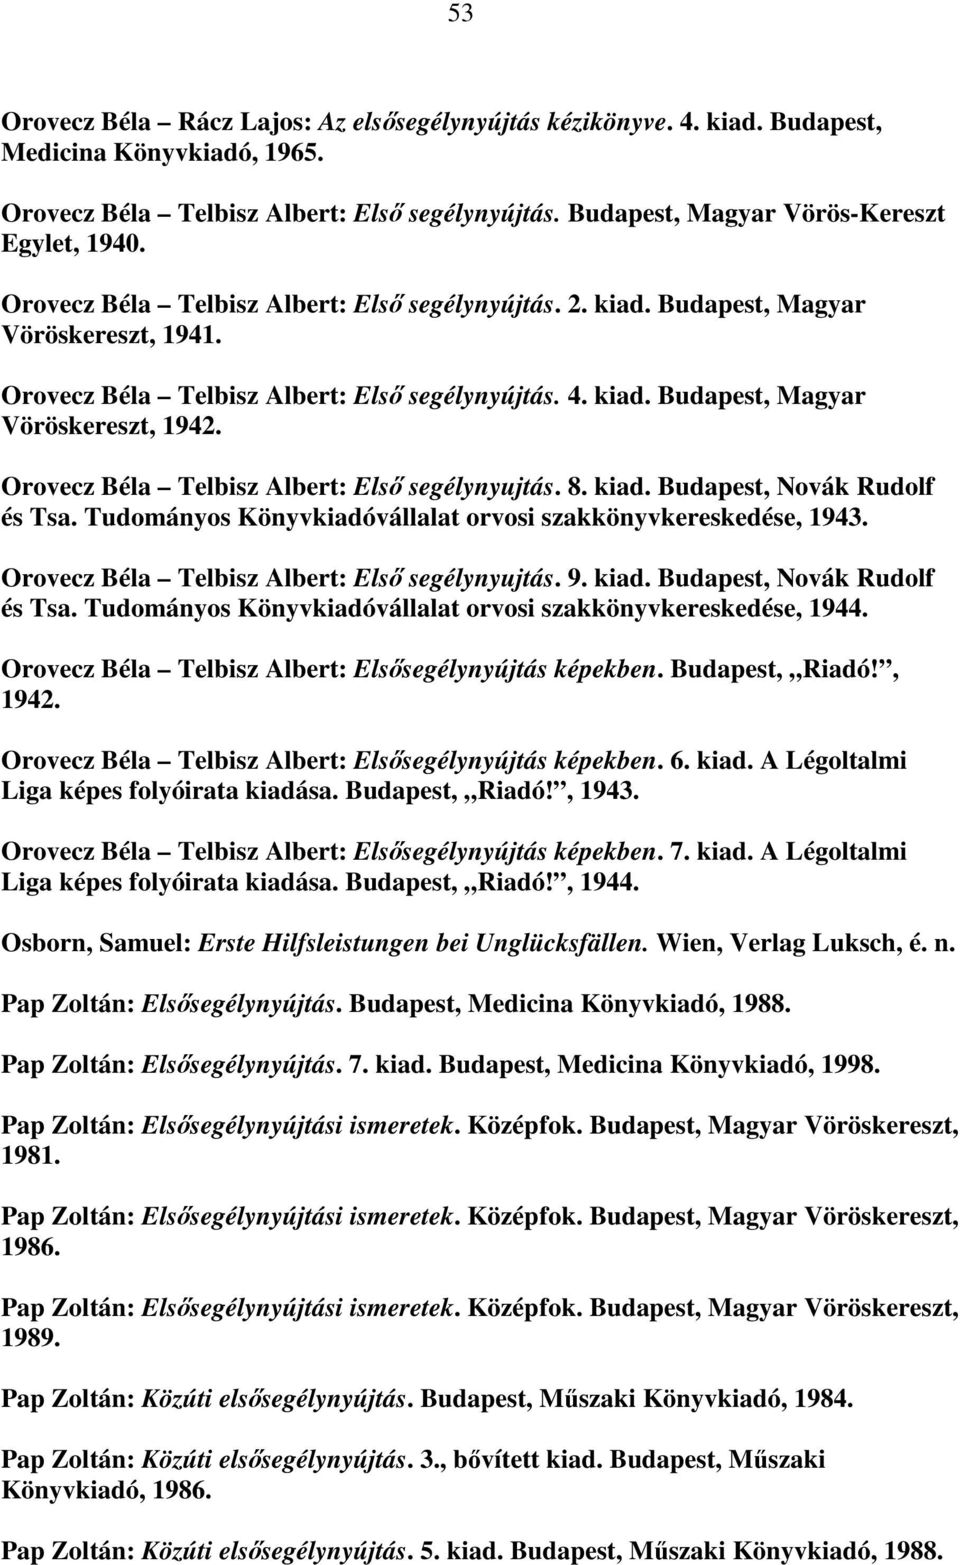 Orovecz Béla Telbisz Albert: Első segélynyujtás. 8. kiad. Budapest, Novák Rudolf és Tsa. Tudományos Könyvkiadóvállalat orvosi szakkönyvkereskedése, 1943.